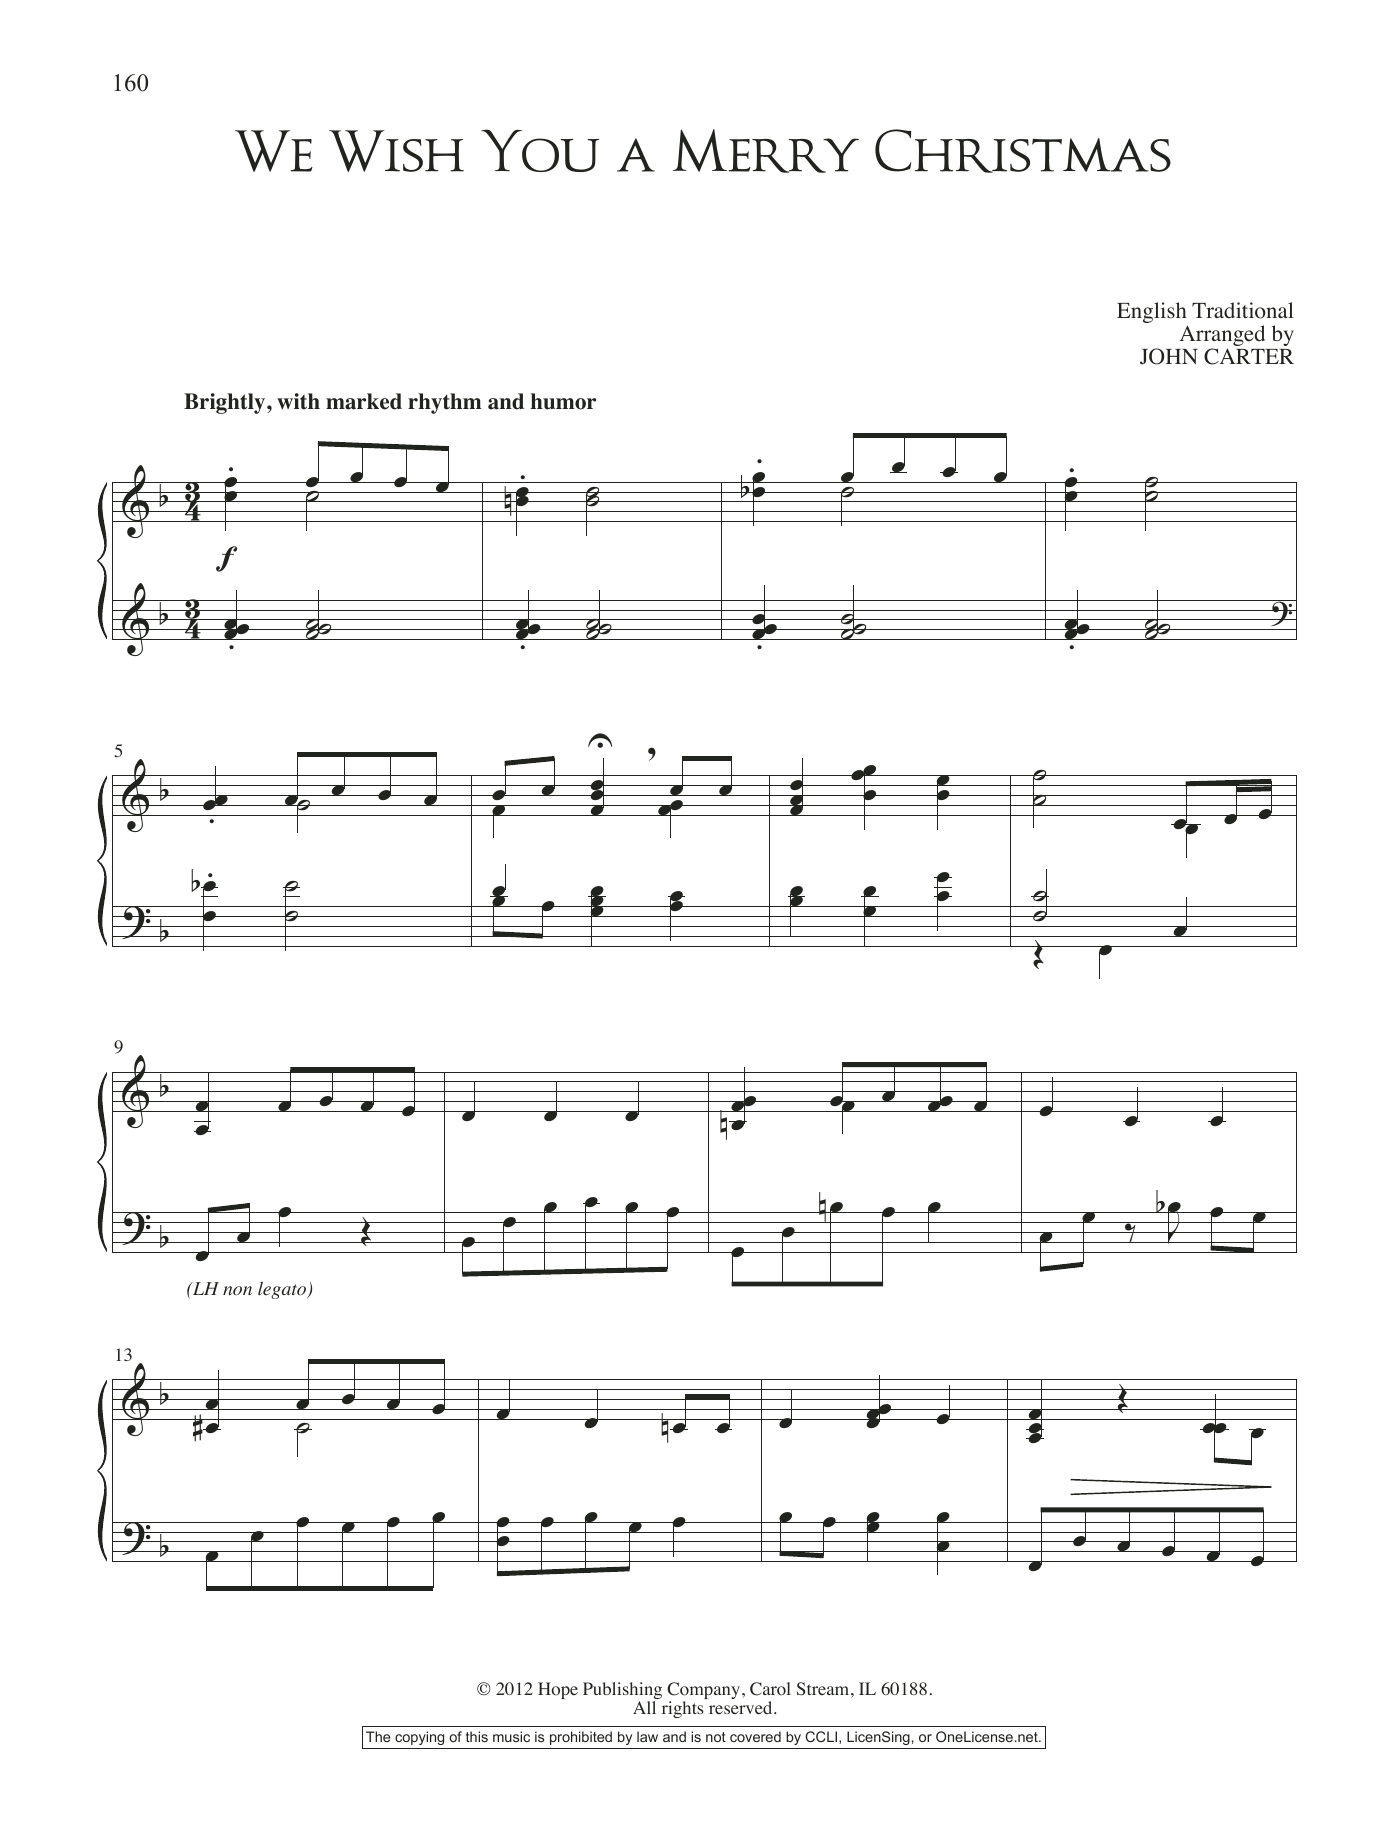 Download John Carter We Wish You A Merry Christmas Sheet Music